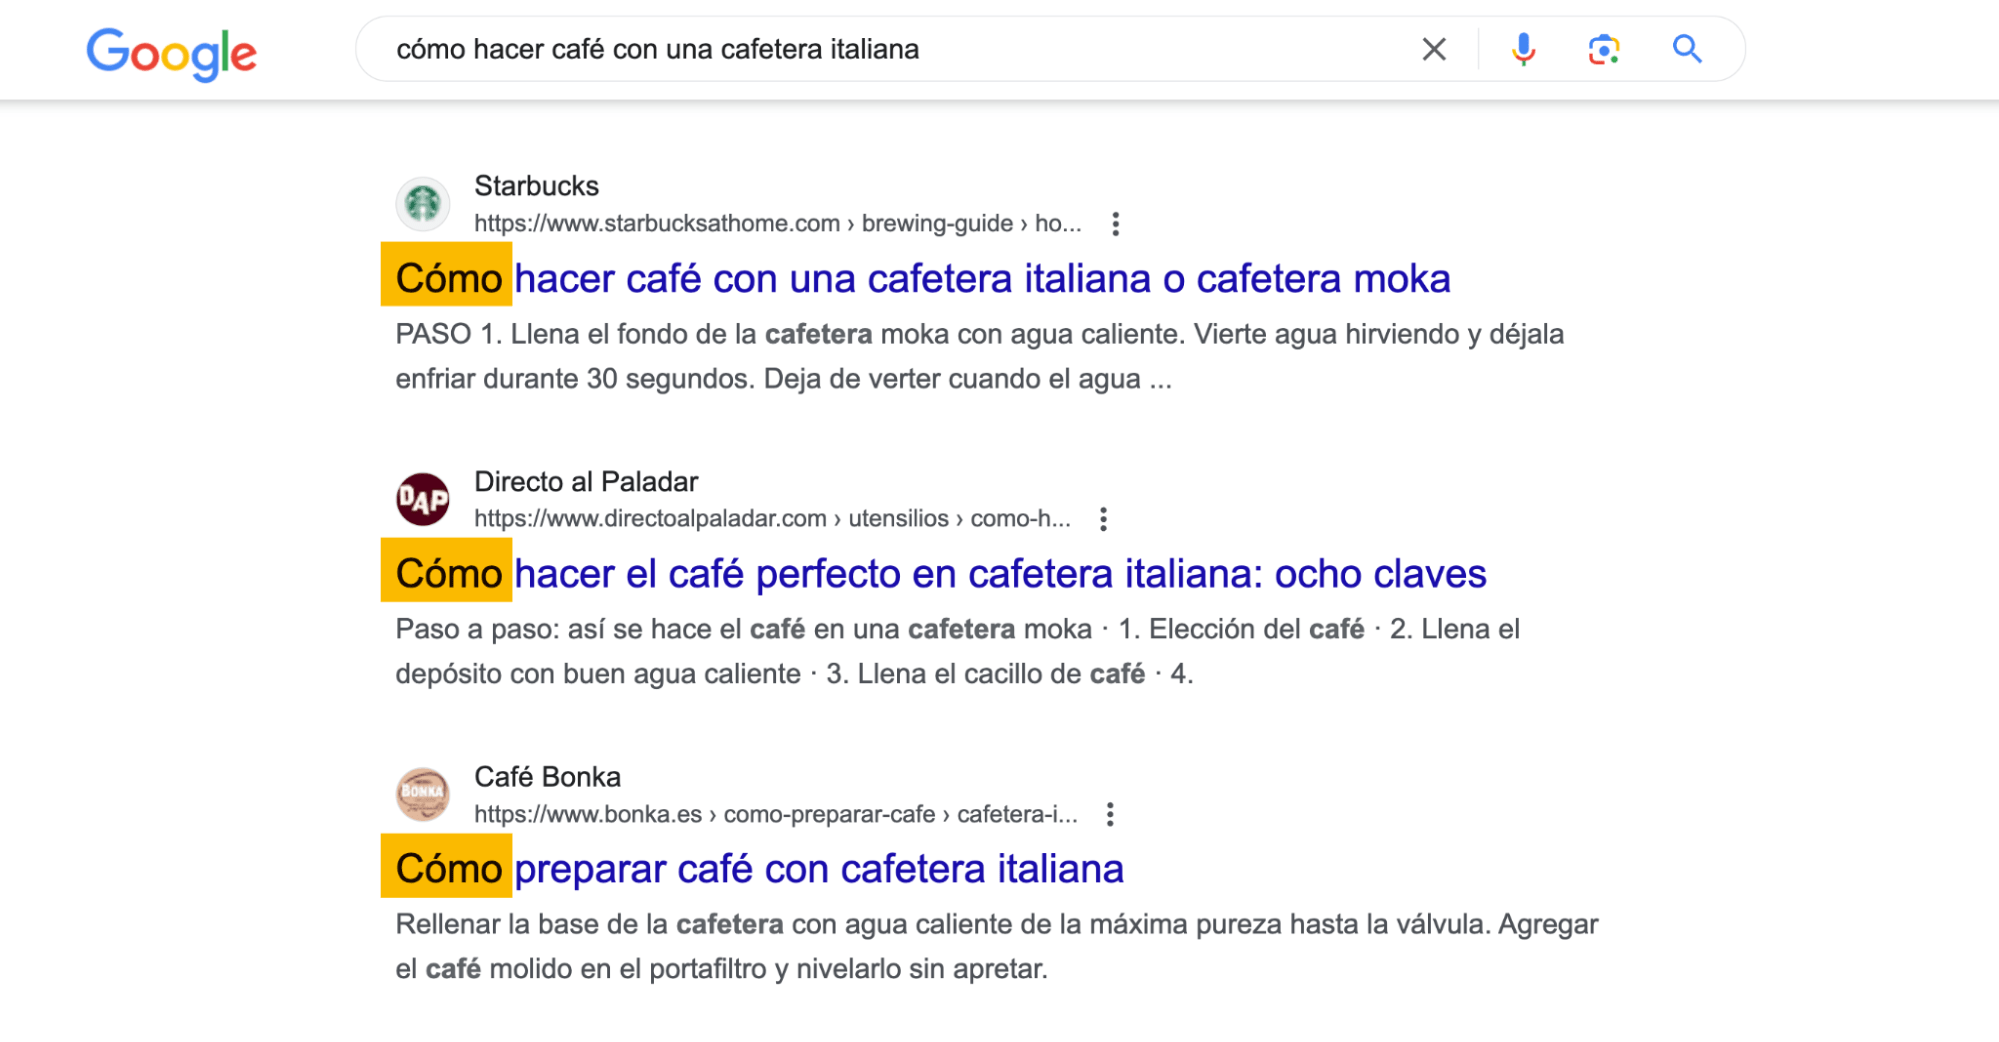 Los resultados de la búsqueda en Google de "cómo hacer café con una cafetera italiana" muestran que los usuarios buscan una guía práctica.